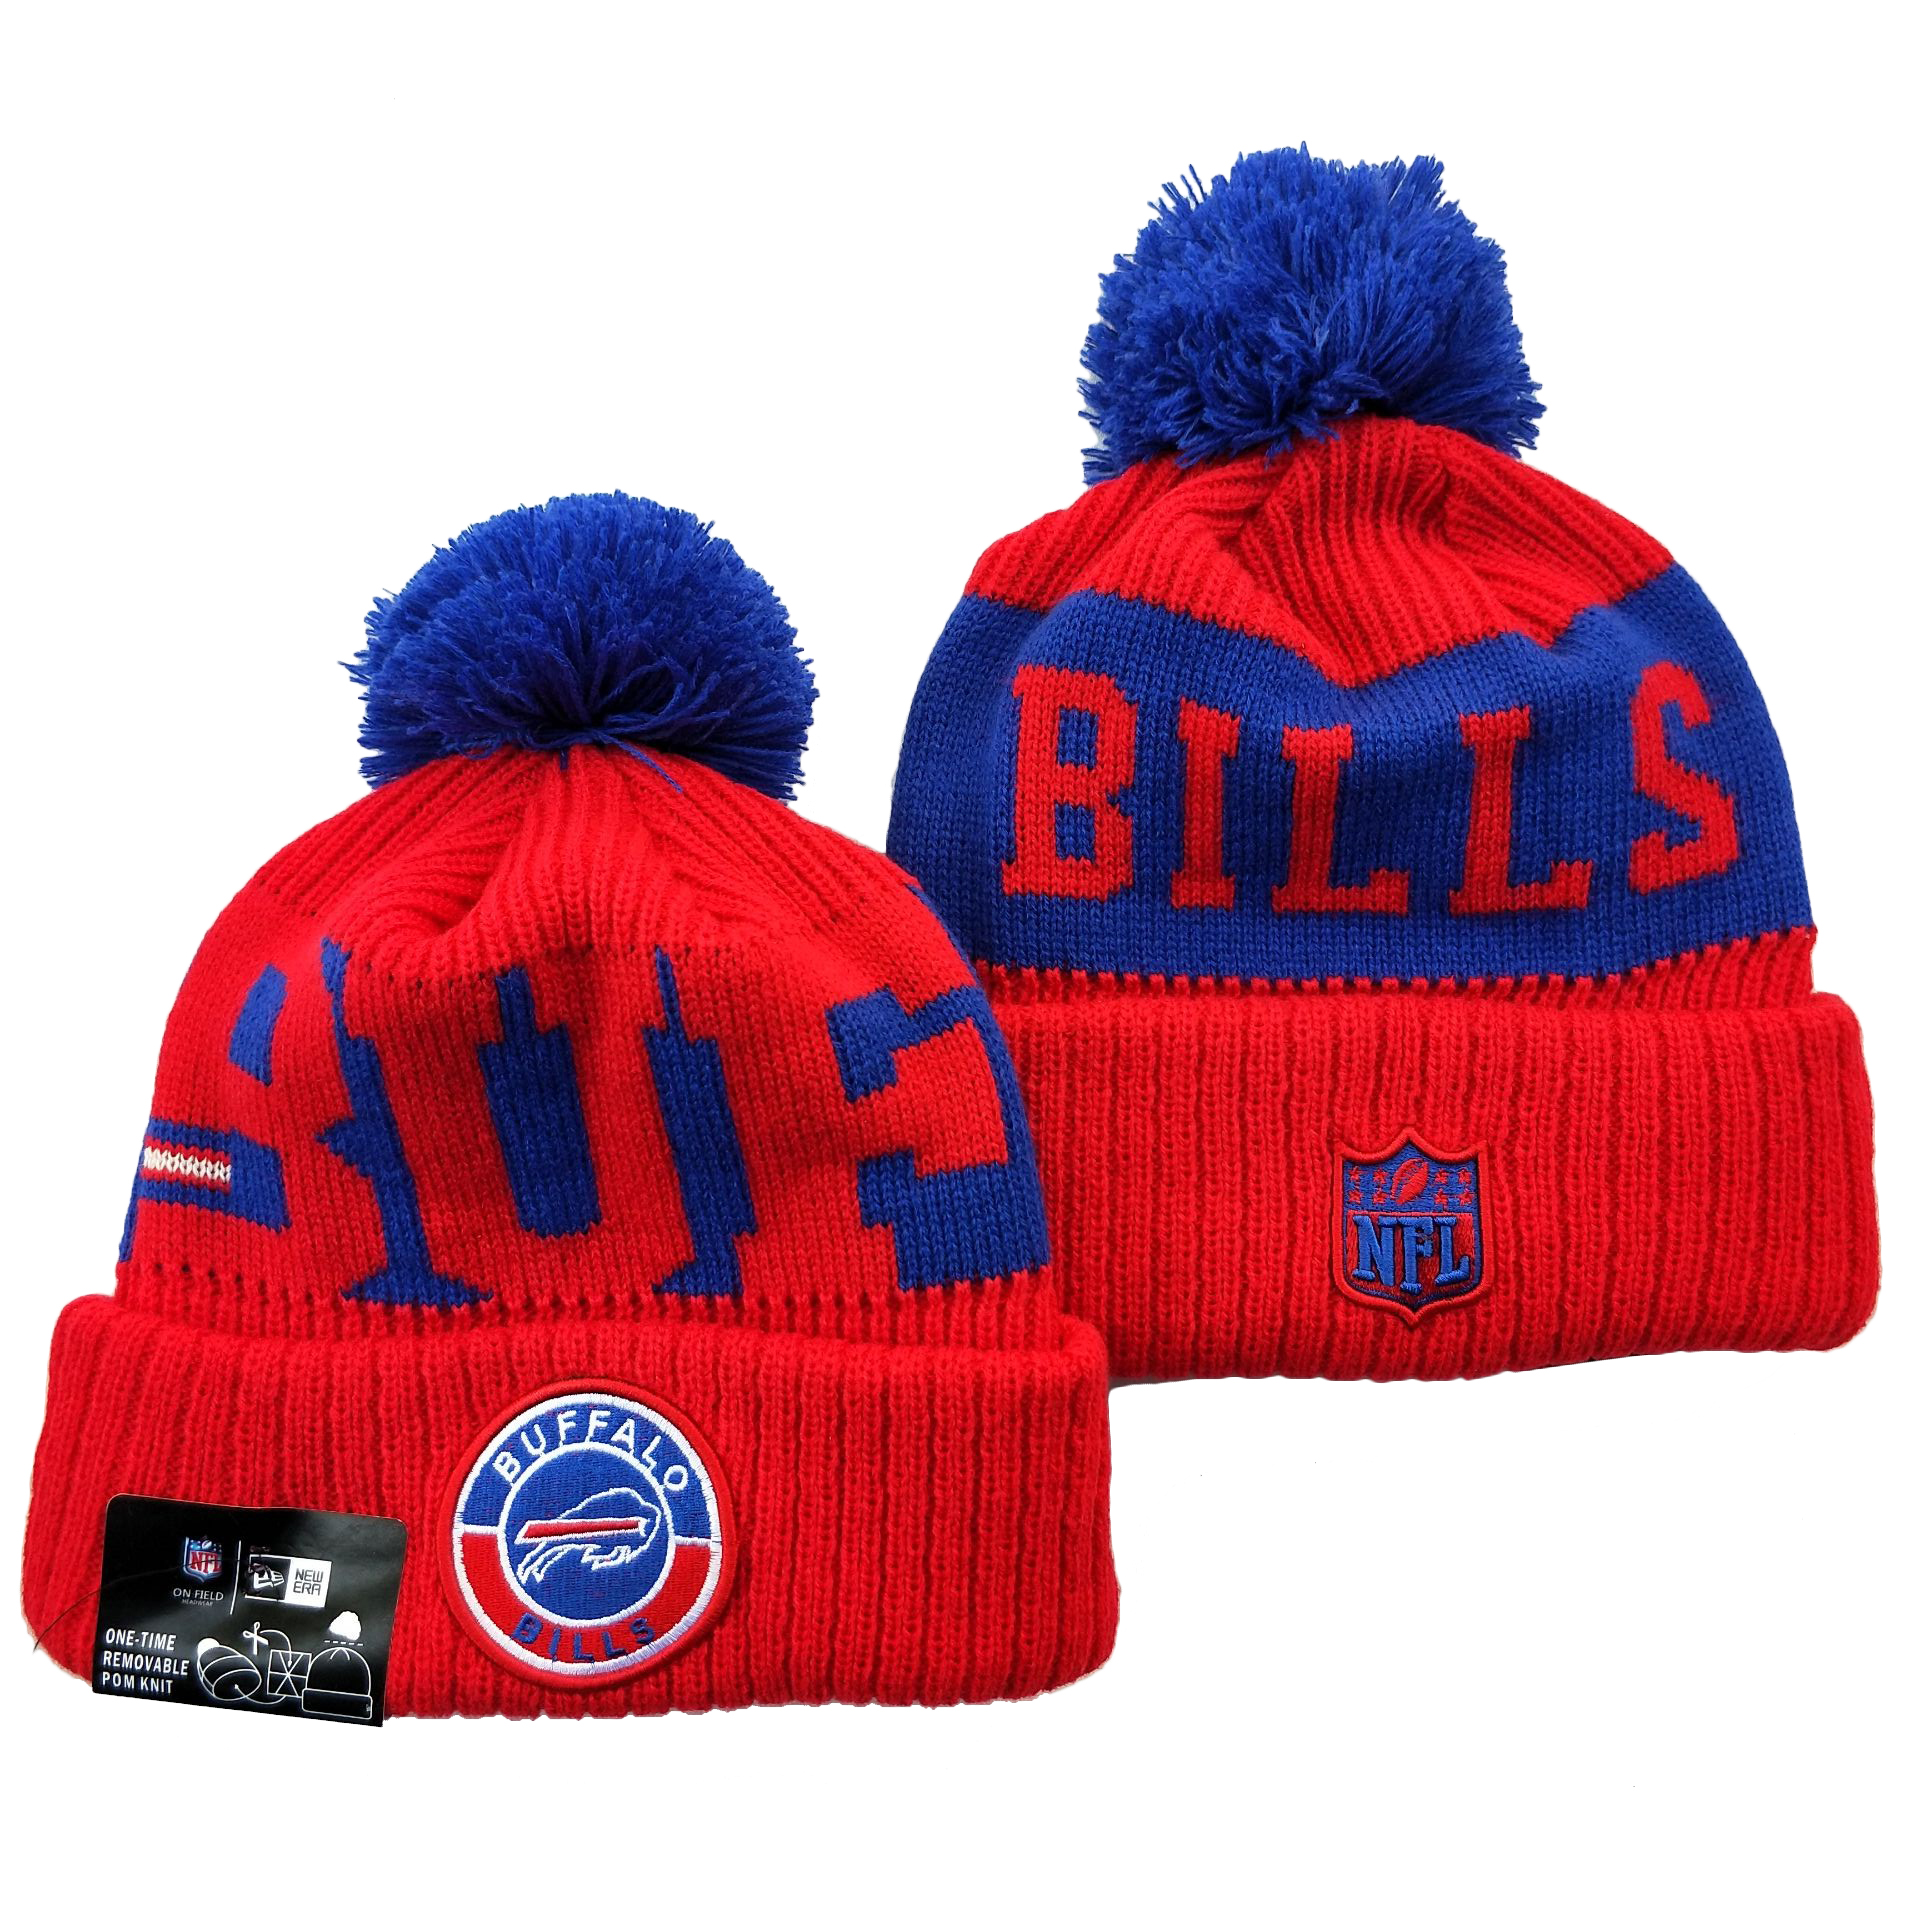 Buffalo Bills Knit Hats 052